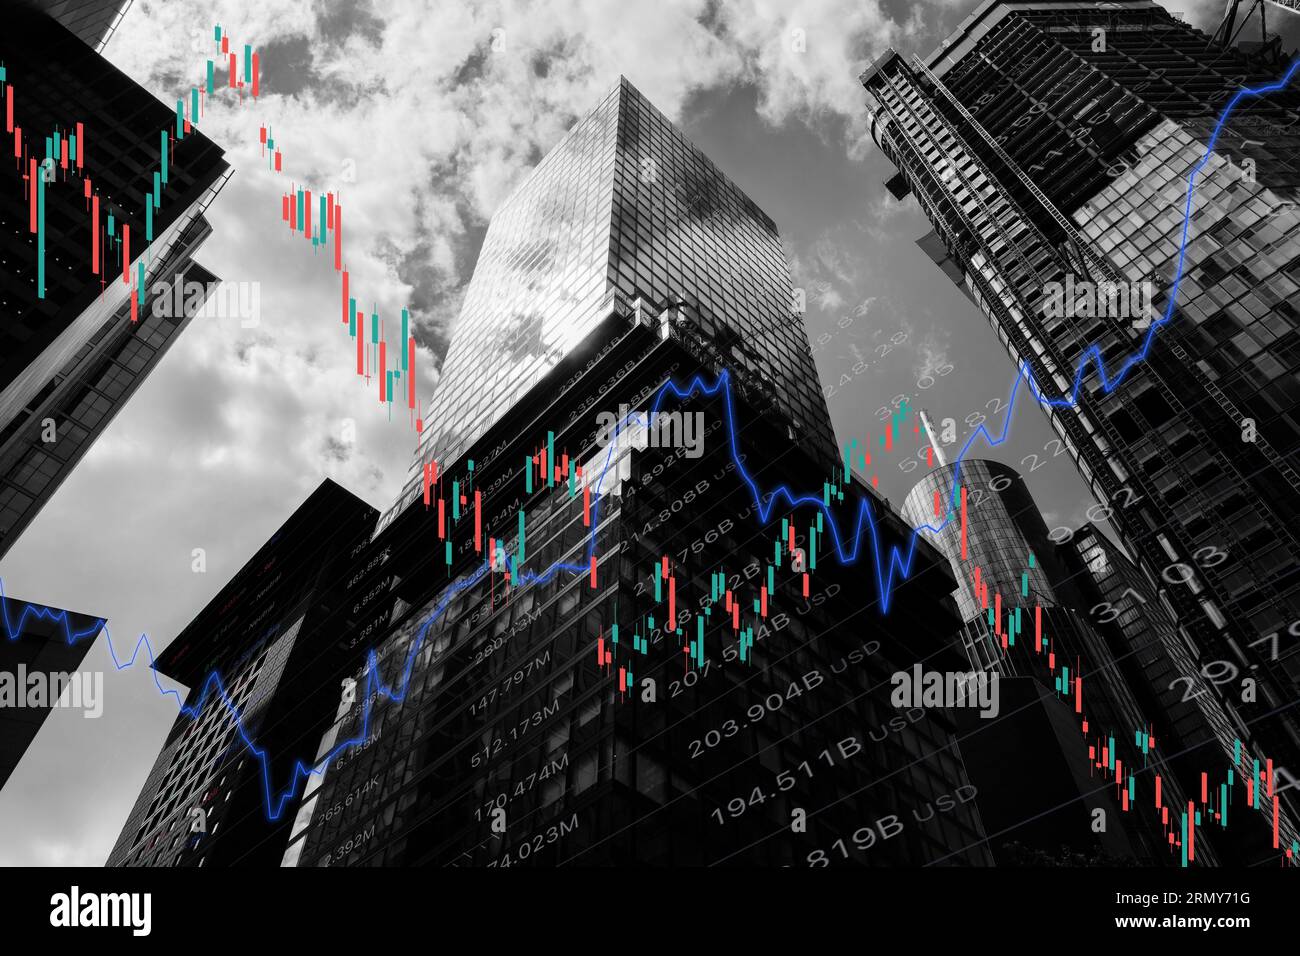 Investitionskonzept mit digitalem AktienCandlestick, Grafik und Preisindikator, Immobilien- und Wirtschaftsindikator und Hintergrund von Wolkenkratzern. Stockfoto